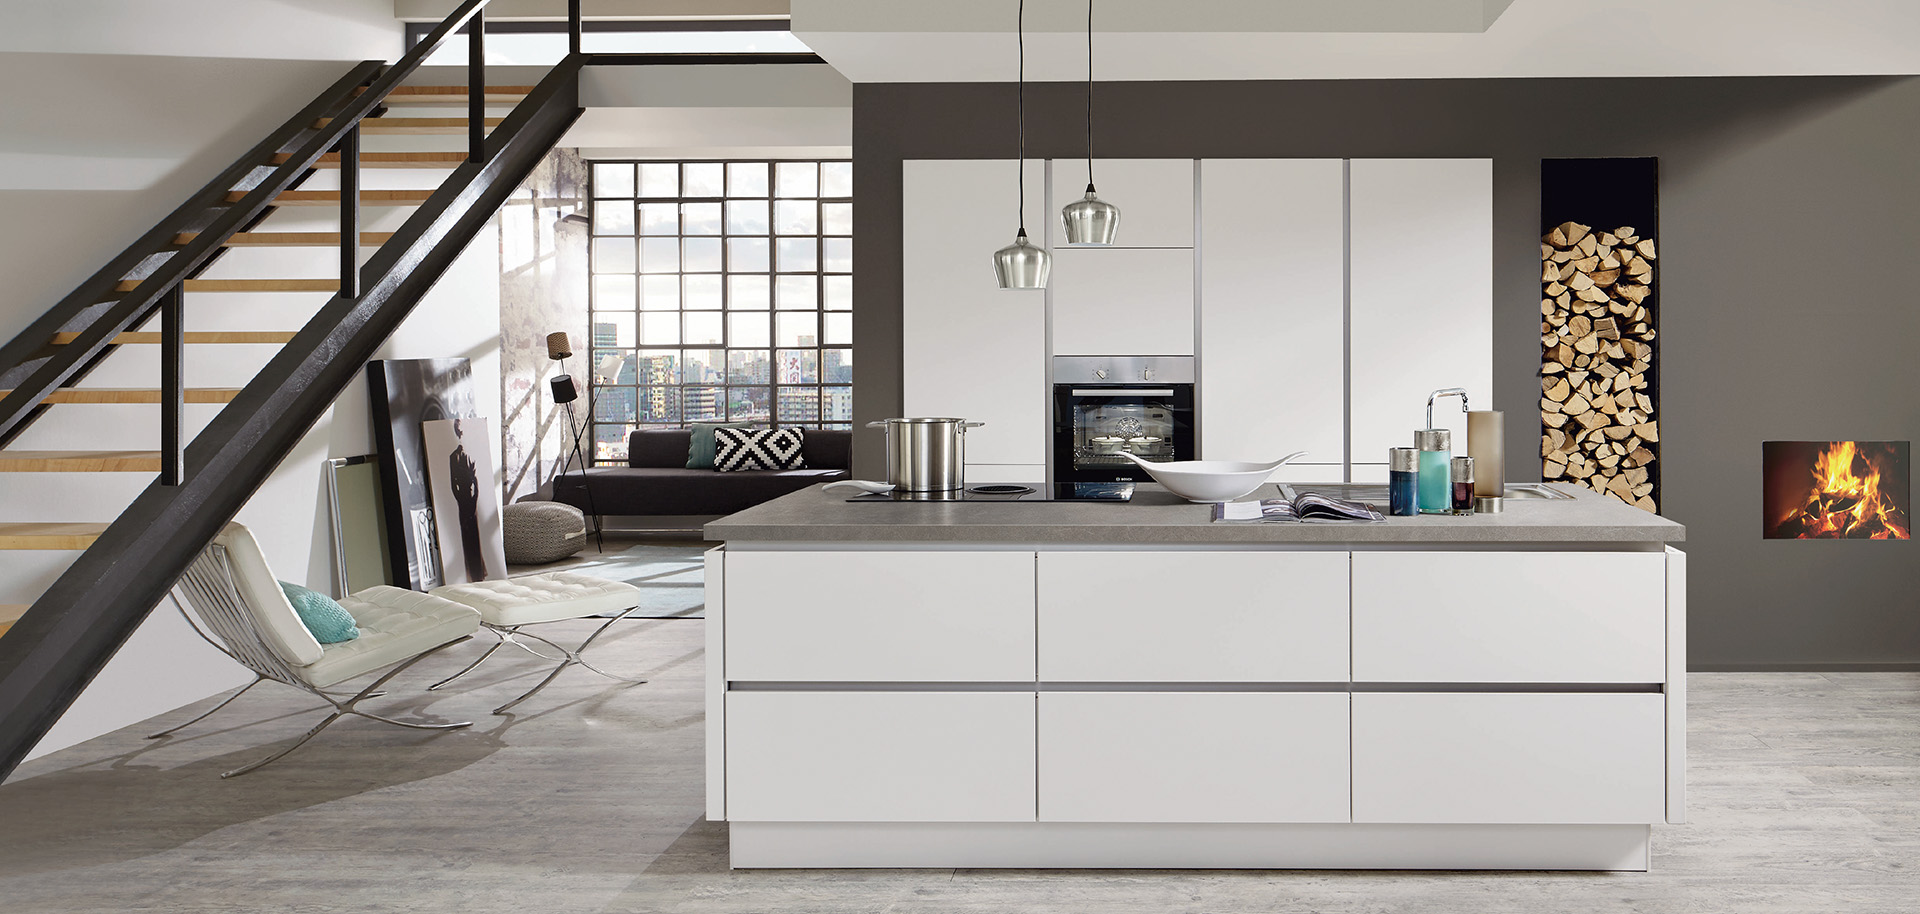 Moderní kuchyňský interiér s čistými liniemi, bílými skříněmi, nerezovými spotřebiči a vedlejším útulným obývacím prostorem s krbem.